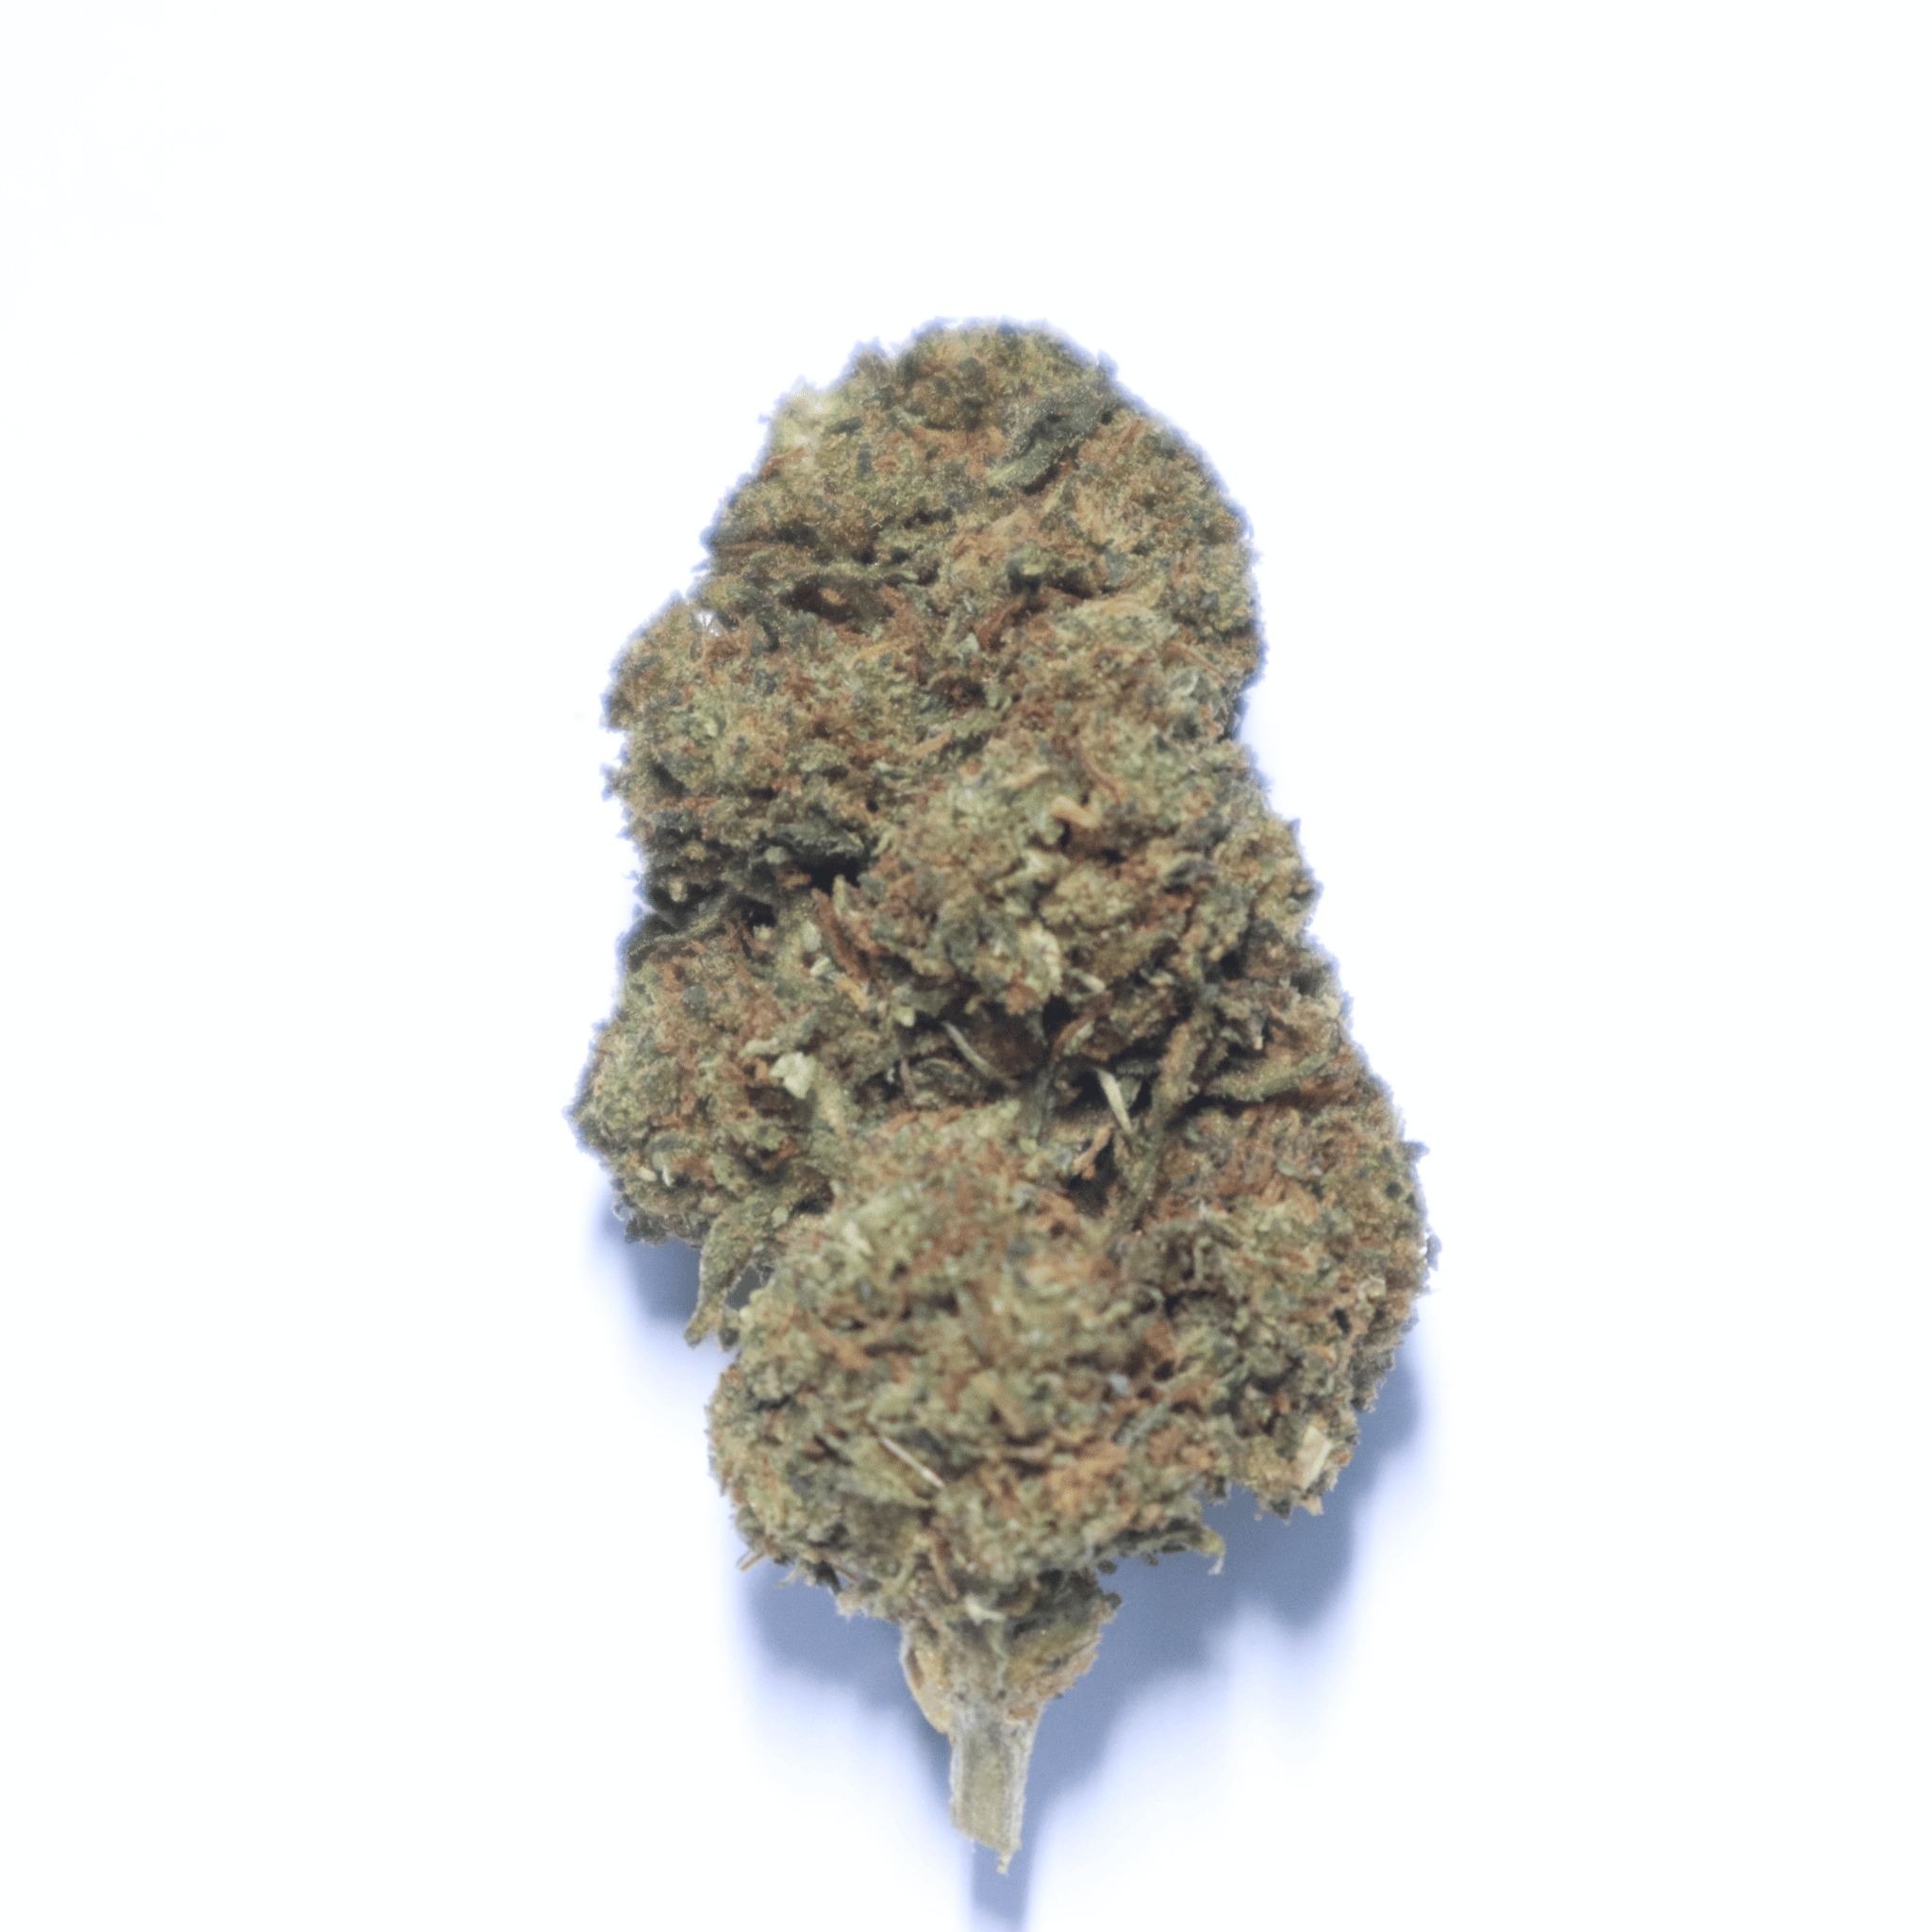 Alien Rock Candy 29% CBD Flower